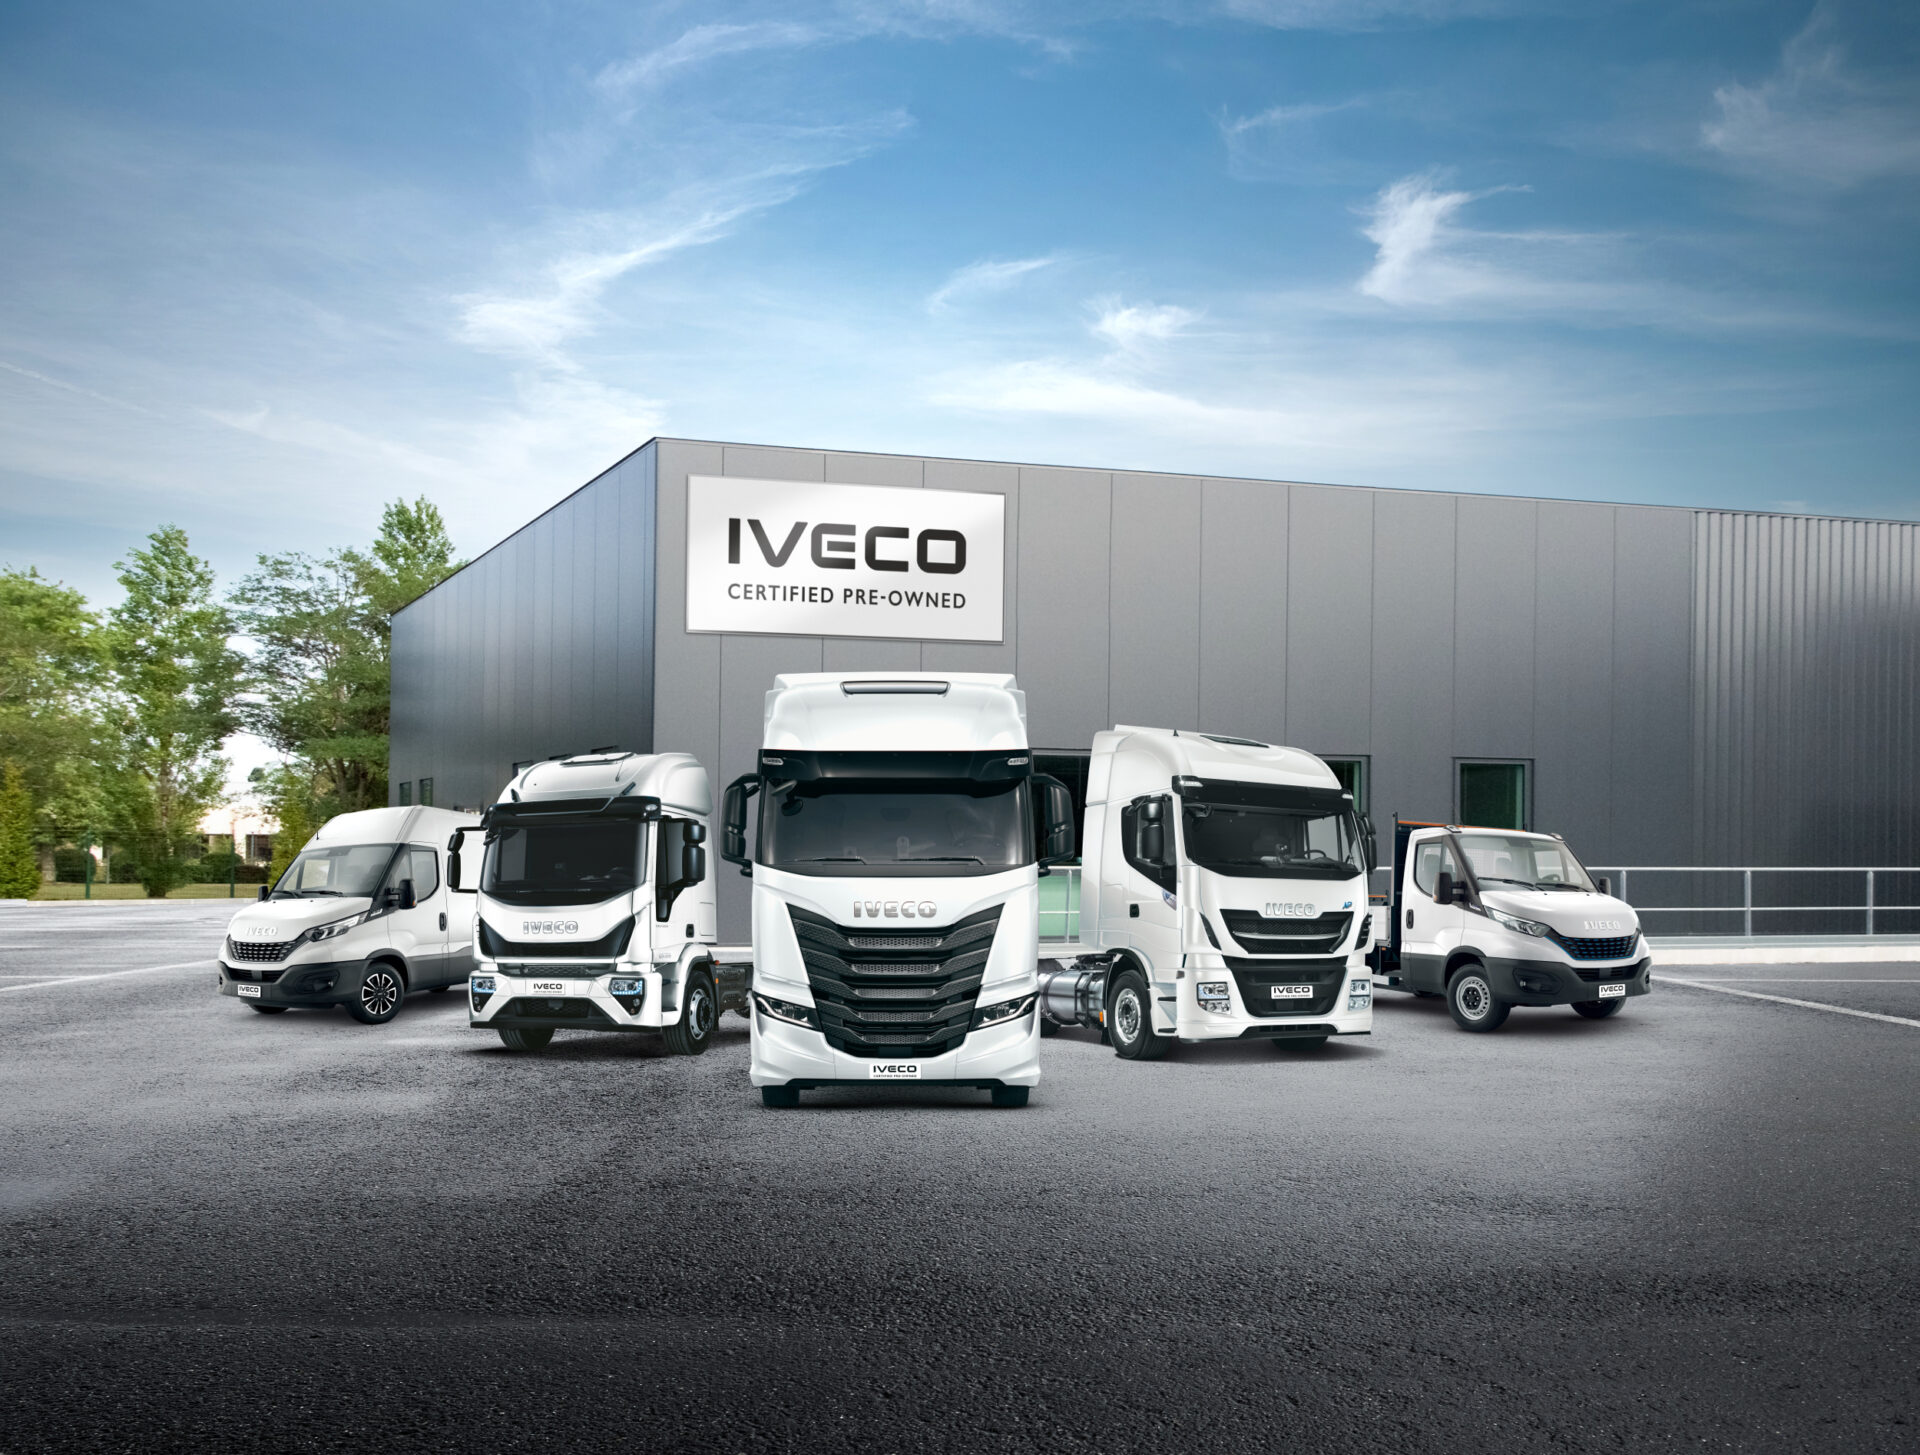 IVECO Certified Pre-Owned: Gebrauchte Nutzfahrzeuge mit Qualitätssiegel